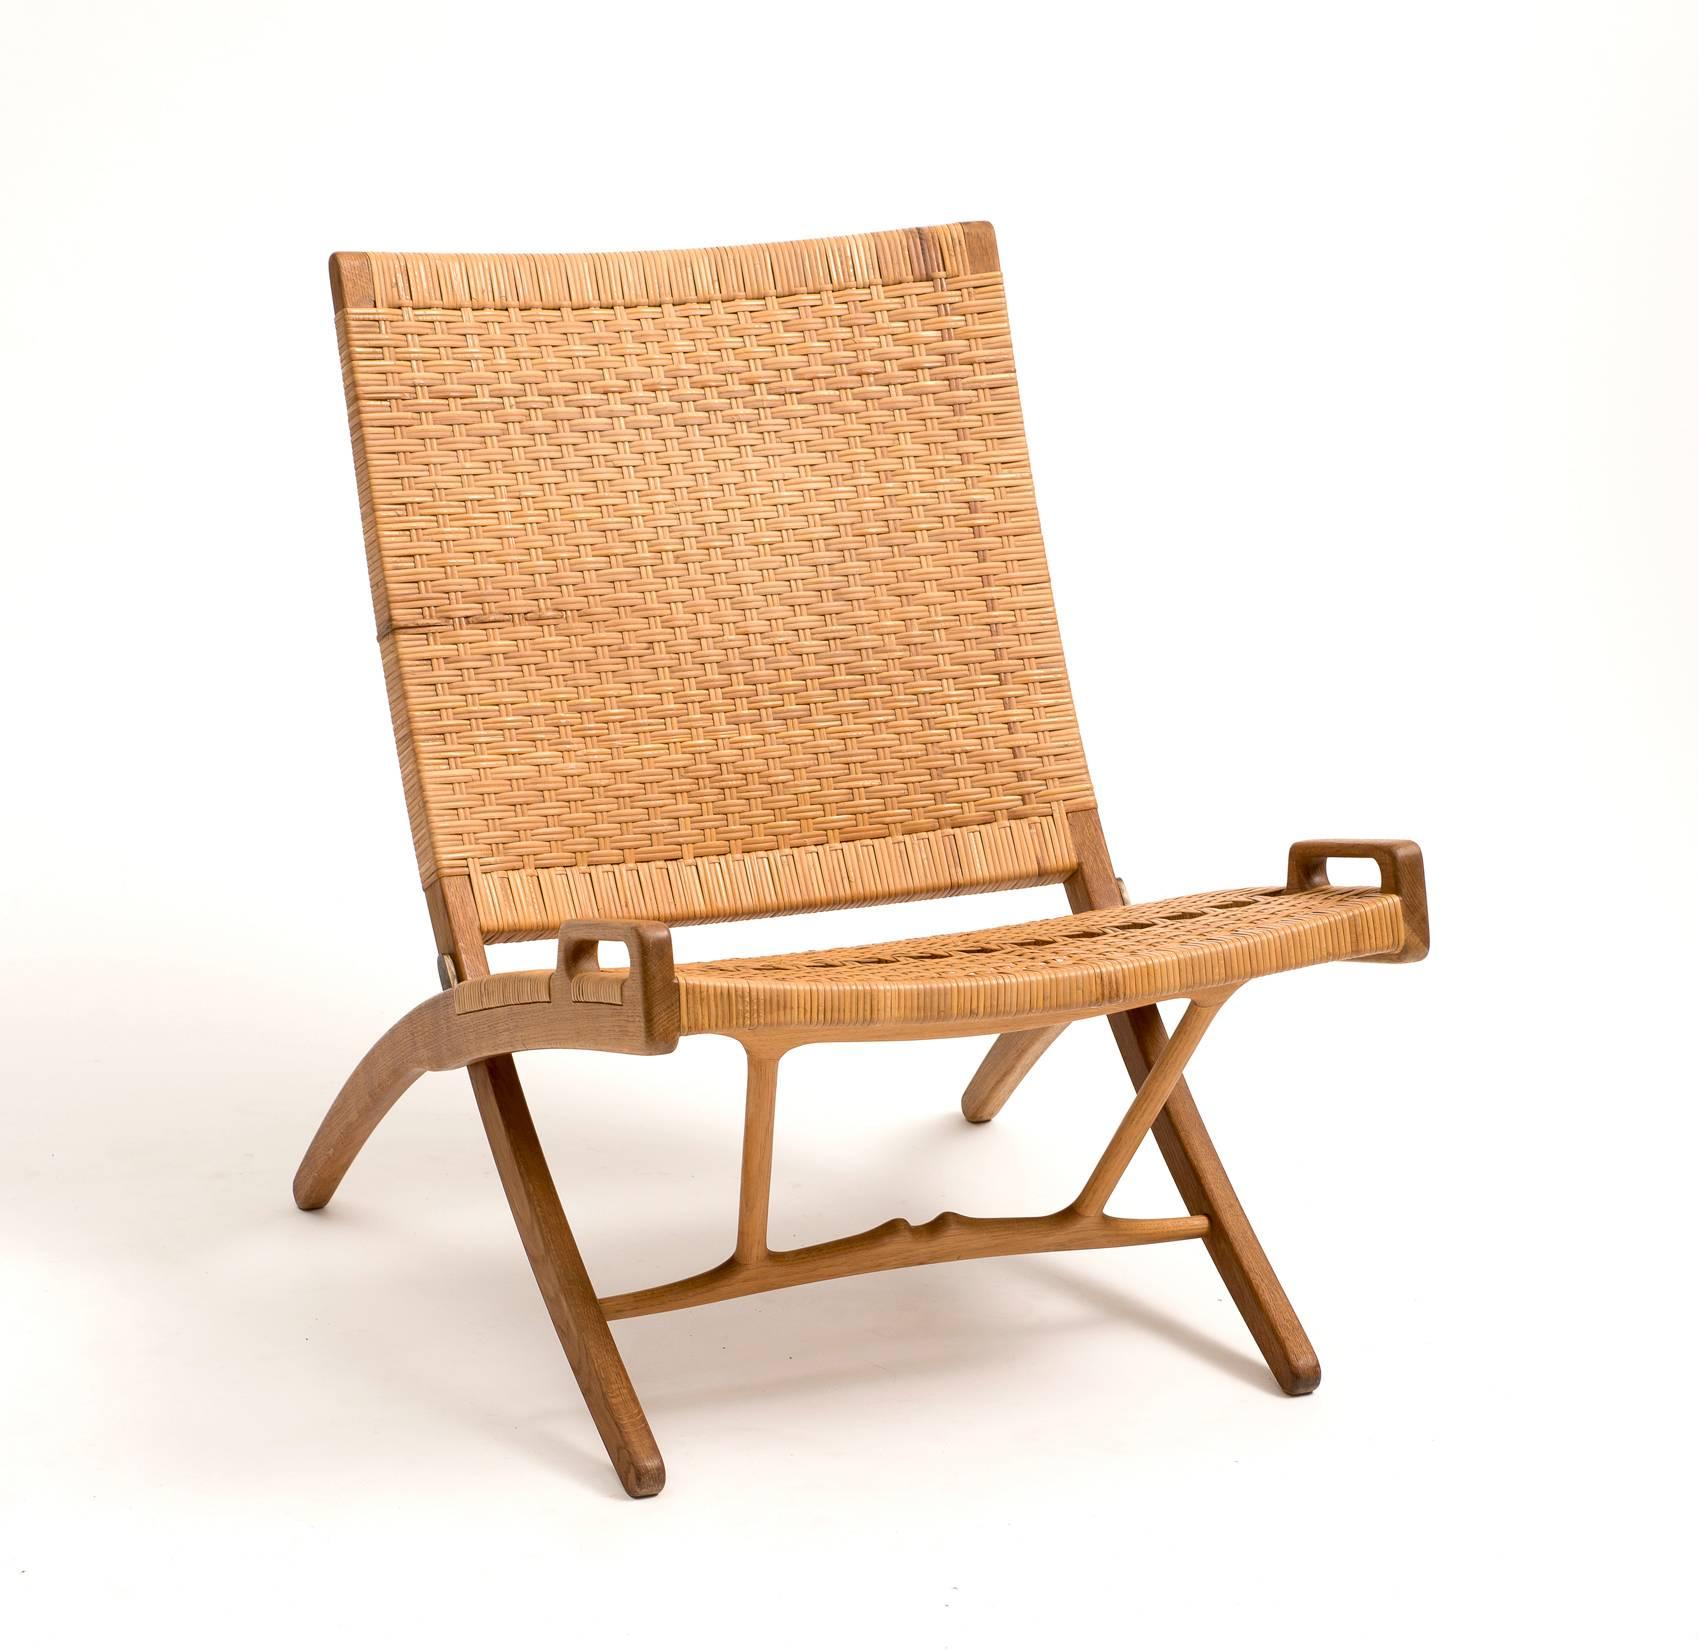 Rare folding chair by Hans Wegner for Johannes Hansen in cane and oak, model JH512, Denmark, 1950s.